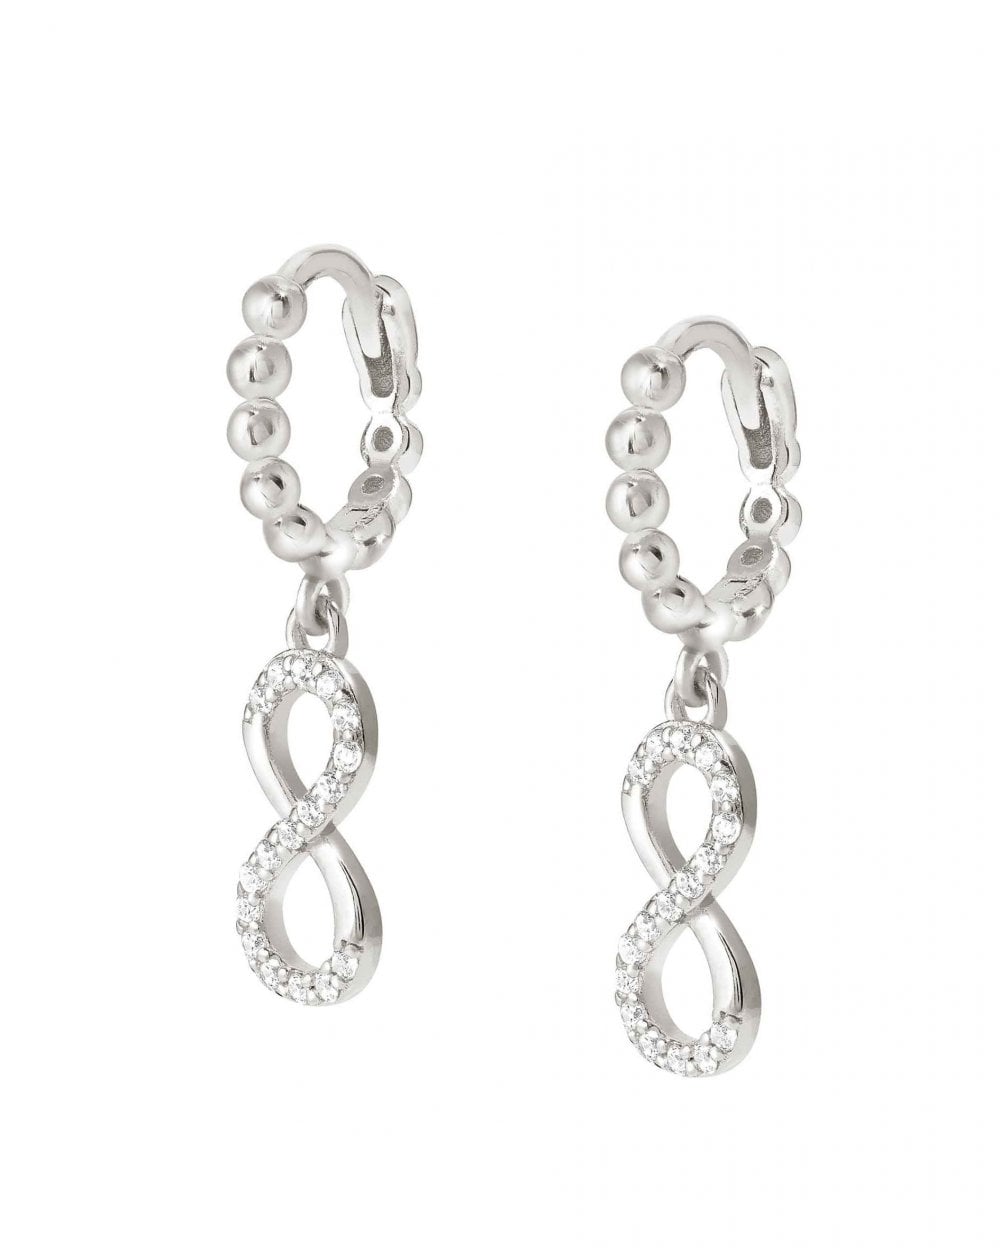 LOVECLOUD Earrings, Infinity Silver